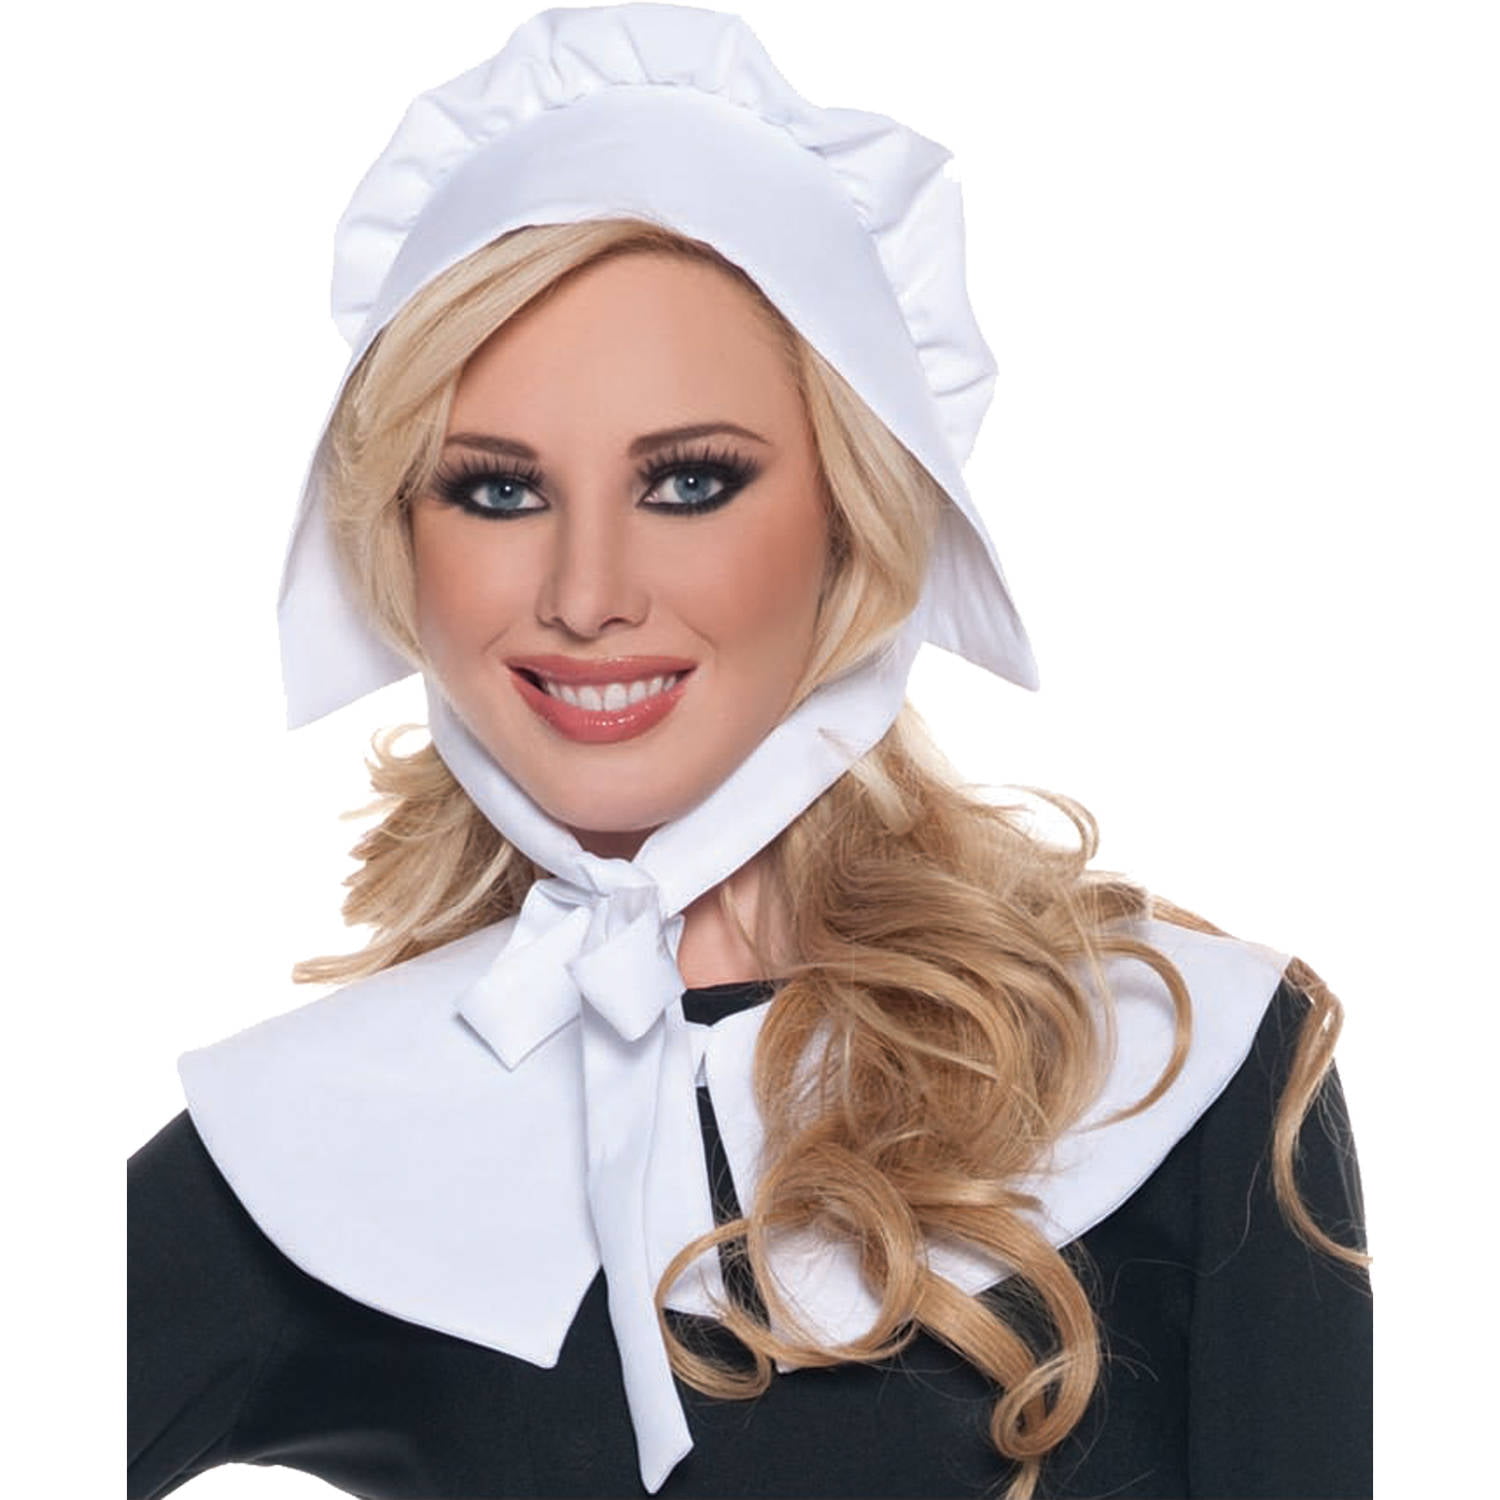 Black Pilgrim Lady Bonnet Colonial Quaker Hat Cap Adult Costume Accessory NEW 